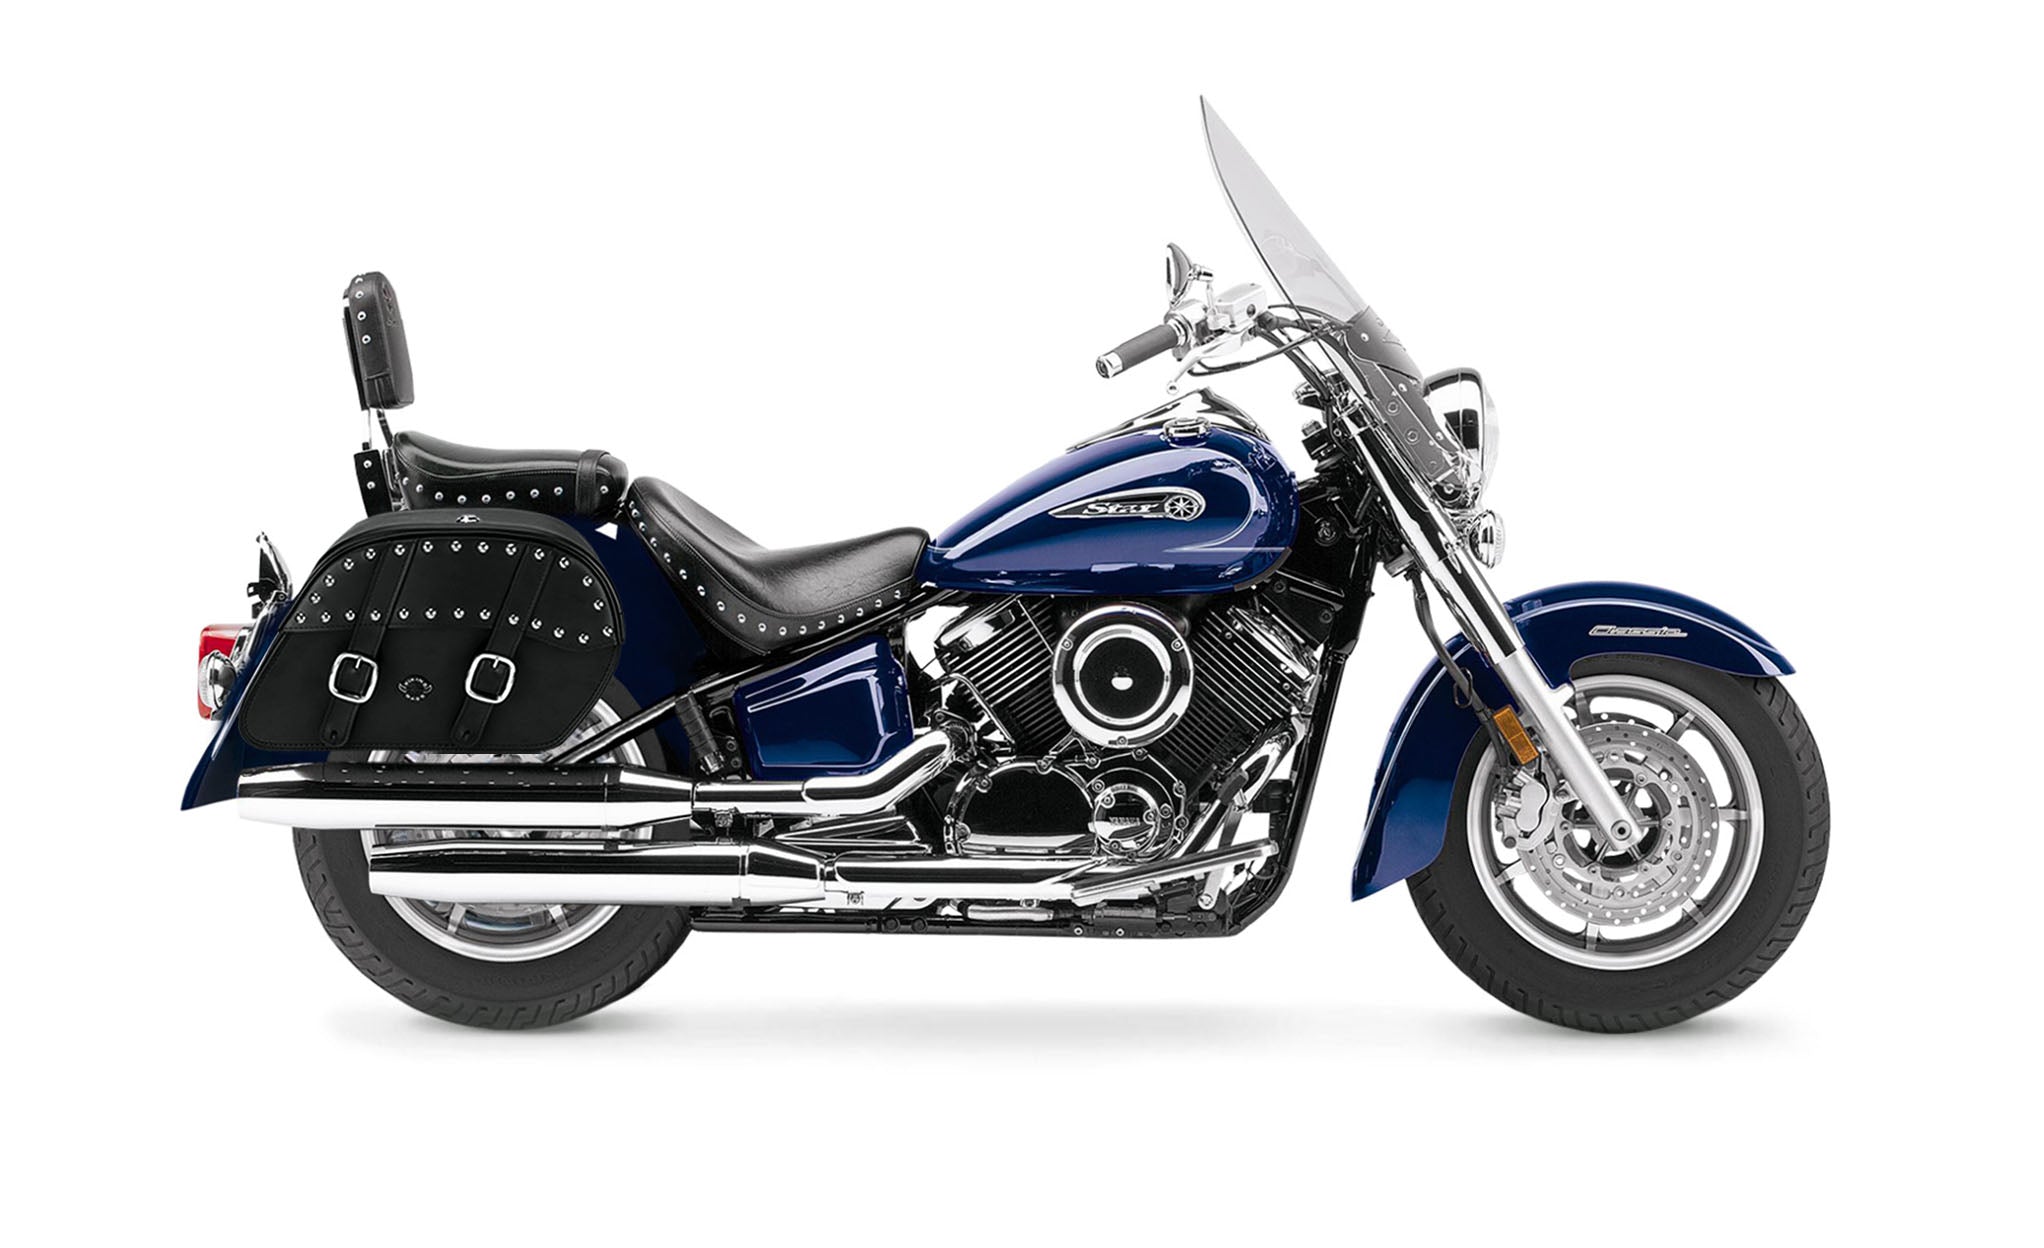 Viking Skarner Large Yamaha Silverado Leather Studded Motorcycle Saddlebags on Bike Photo @expand